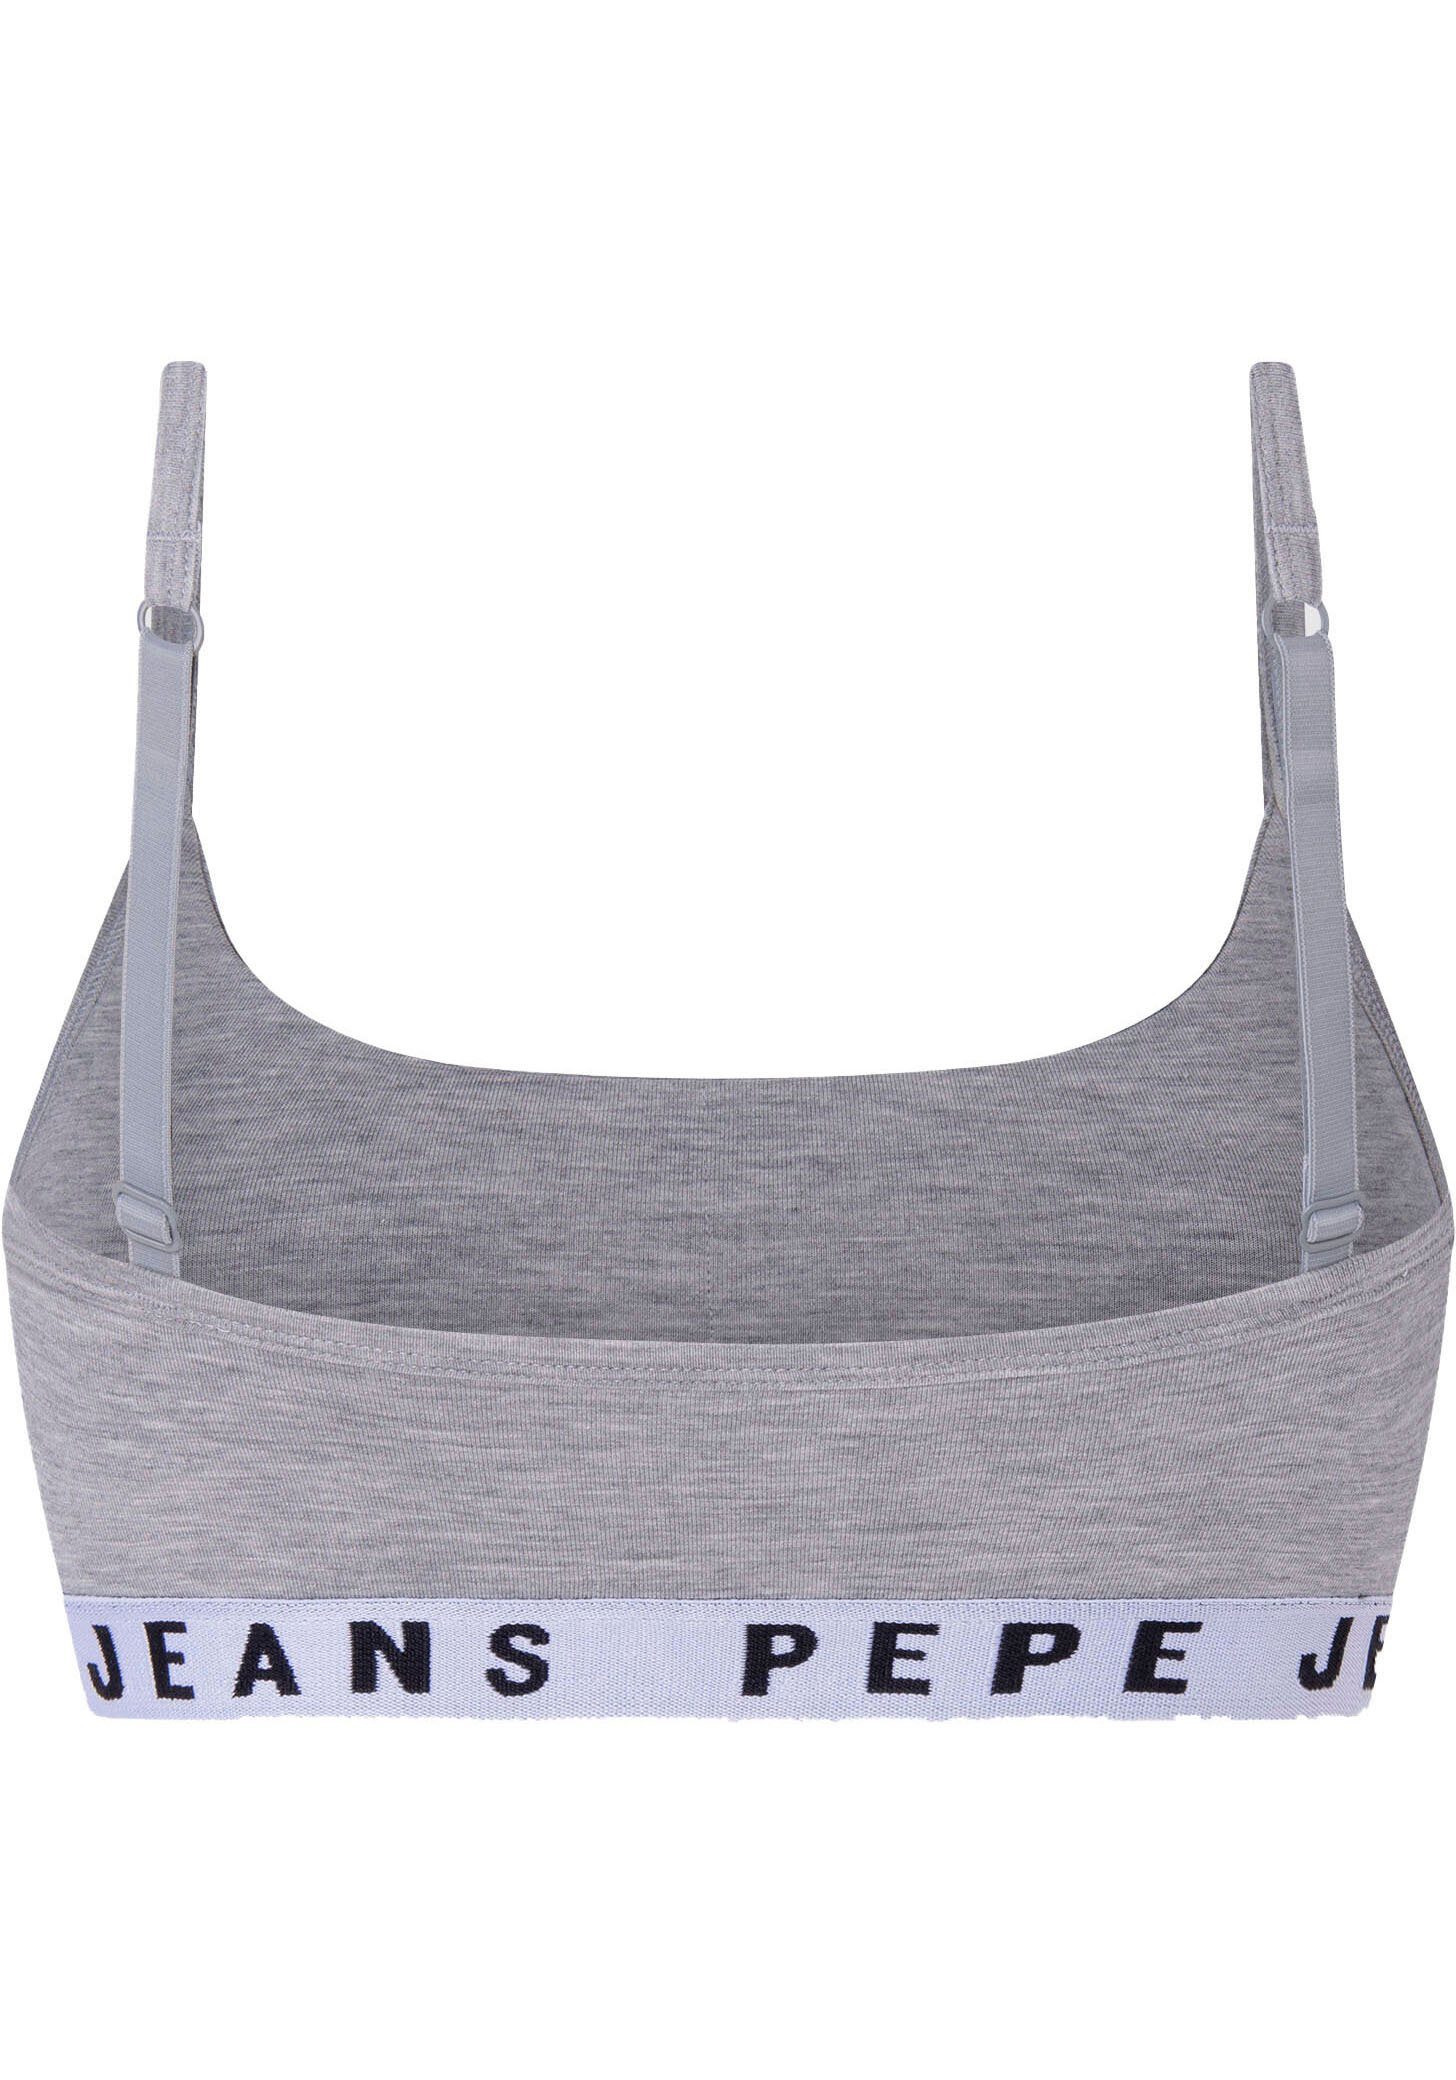 Pepe meliert Logo Bustier Jeans grau